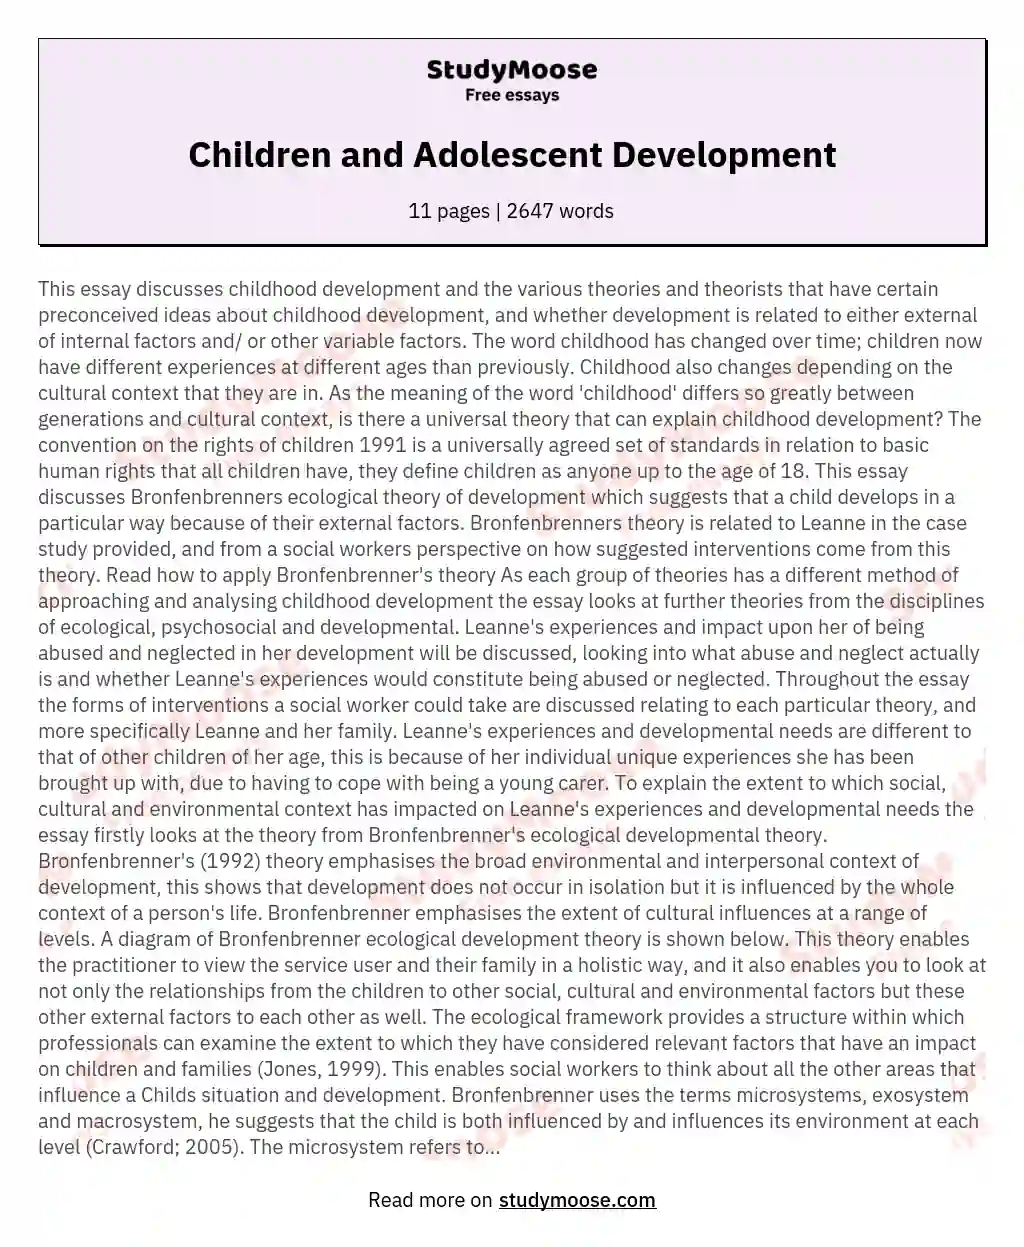 Children and Adolescent Development essay